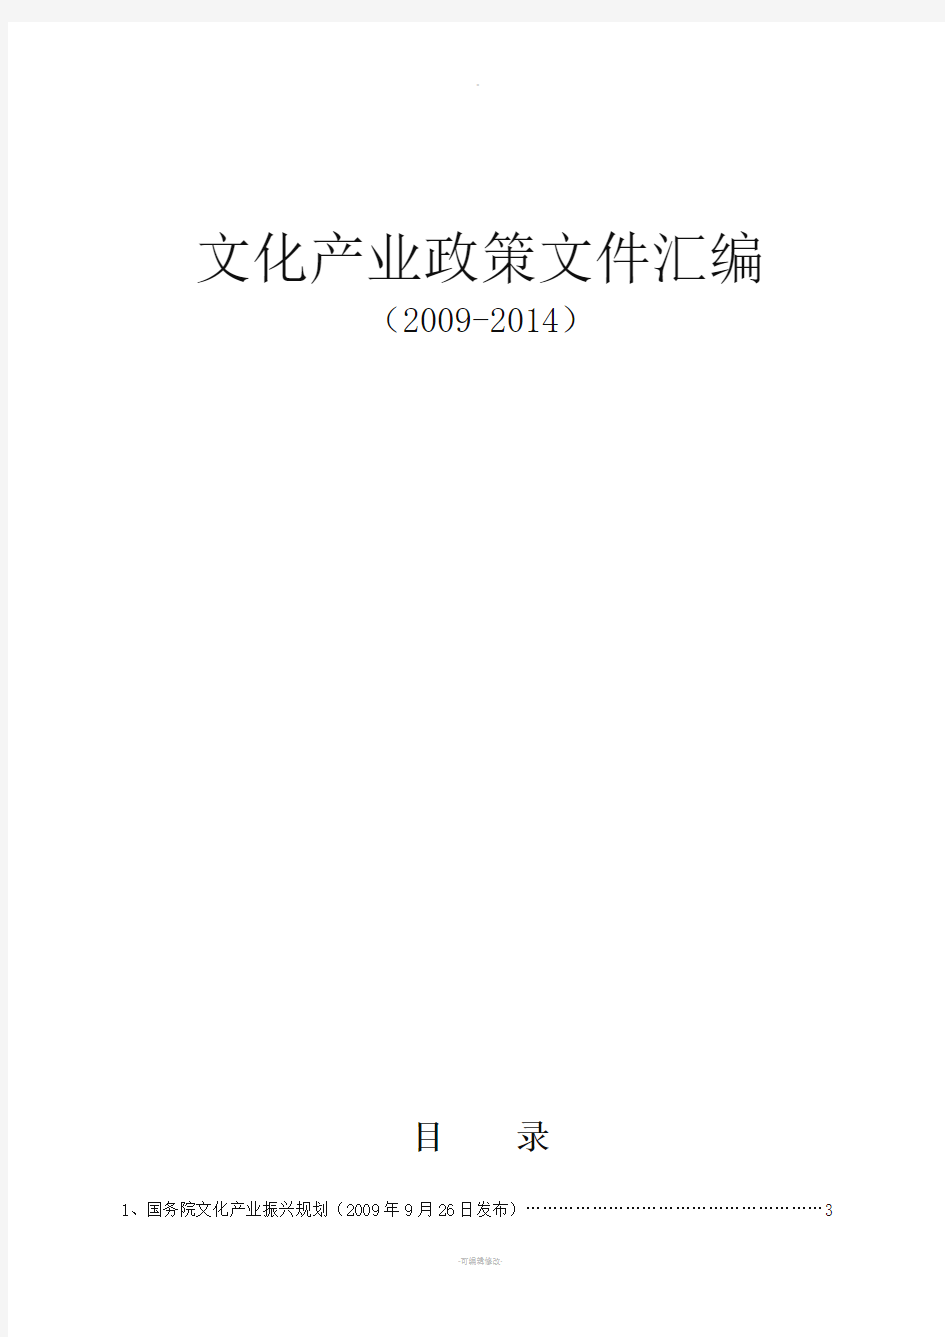 文化产业政策法规汇编(2009-2014)